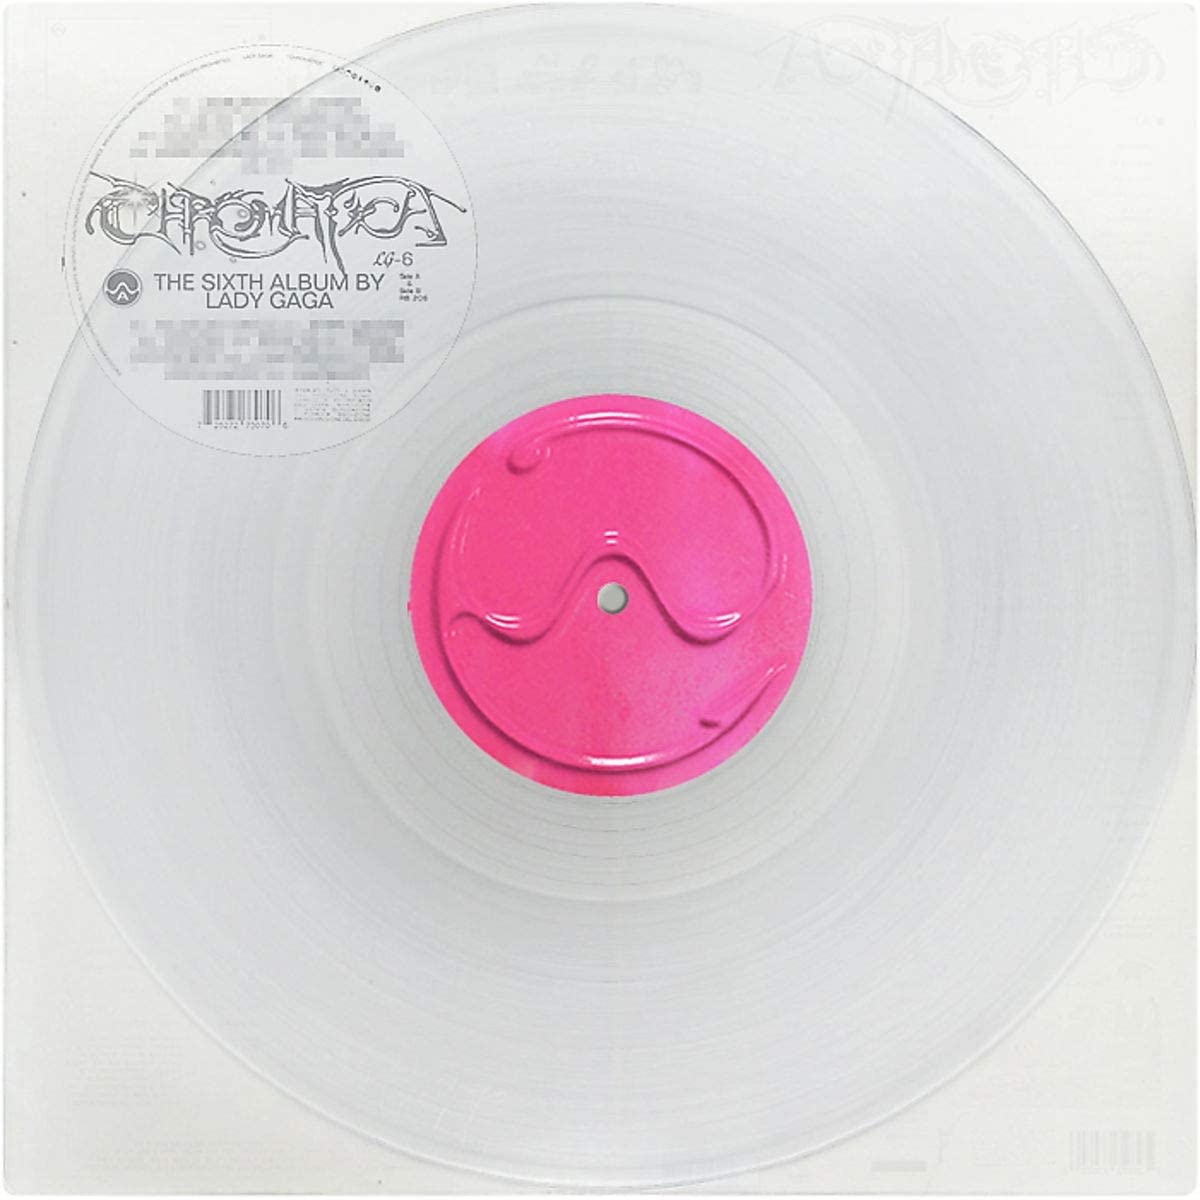 Lady Gaga - Chromatica - LP